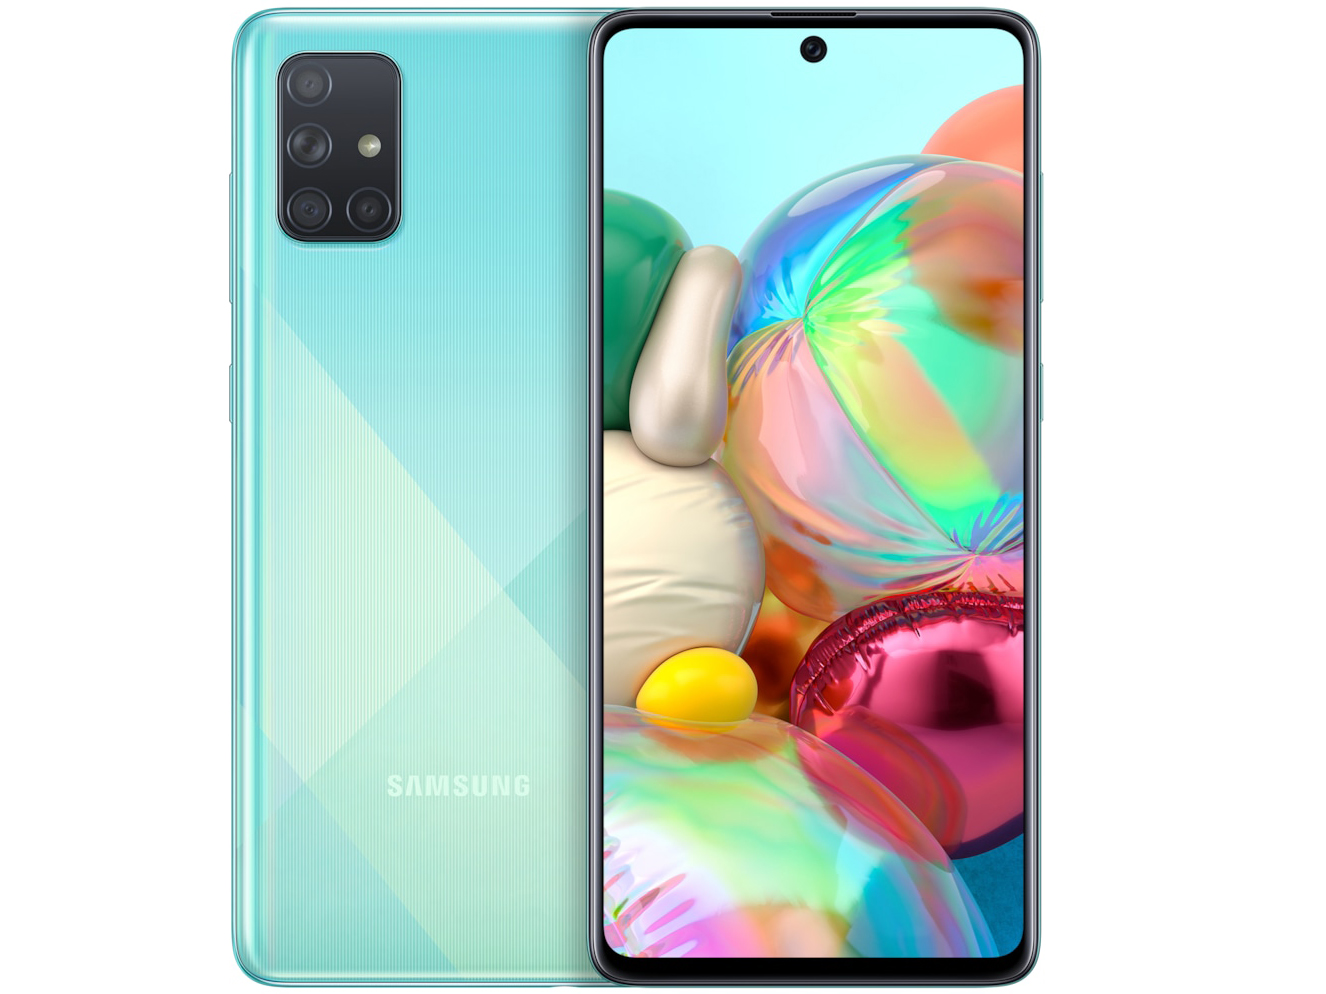 Dòng điện thoại Samsung Galaxy A Series là một lựa chọn đáng giá cho những người đang tìm kiếm một chiếc điện thoại chất lượng với mức giá phải chăng. Hãy cùng xem hình ảnh về dòng sản phẩm này để có đầy đủ thông tin và đánh giá chi tiết.